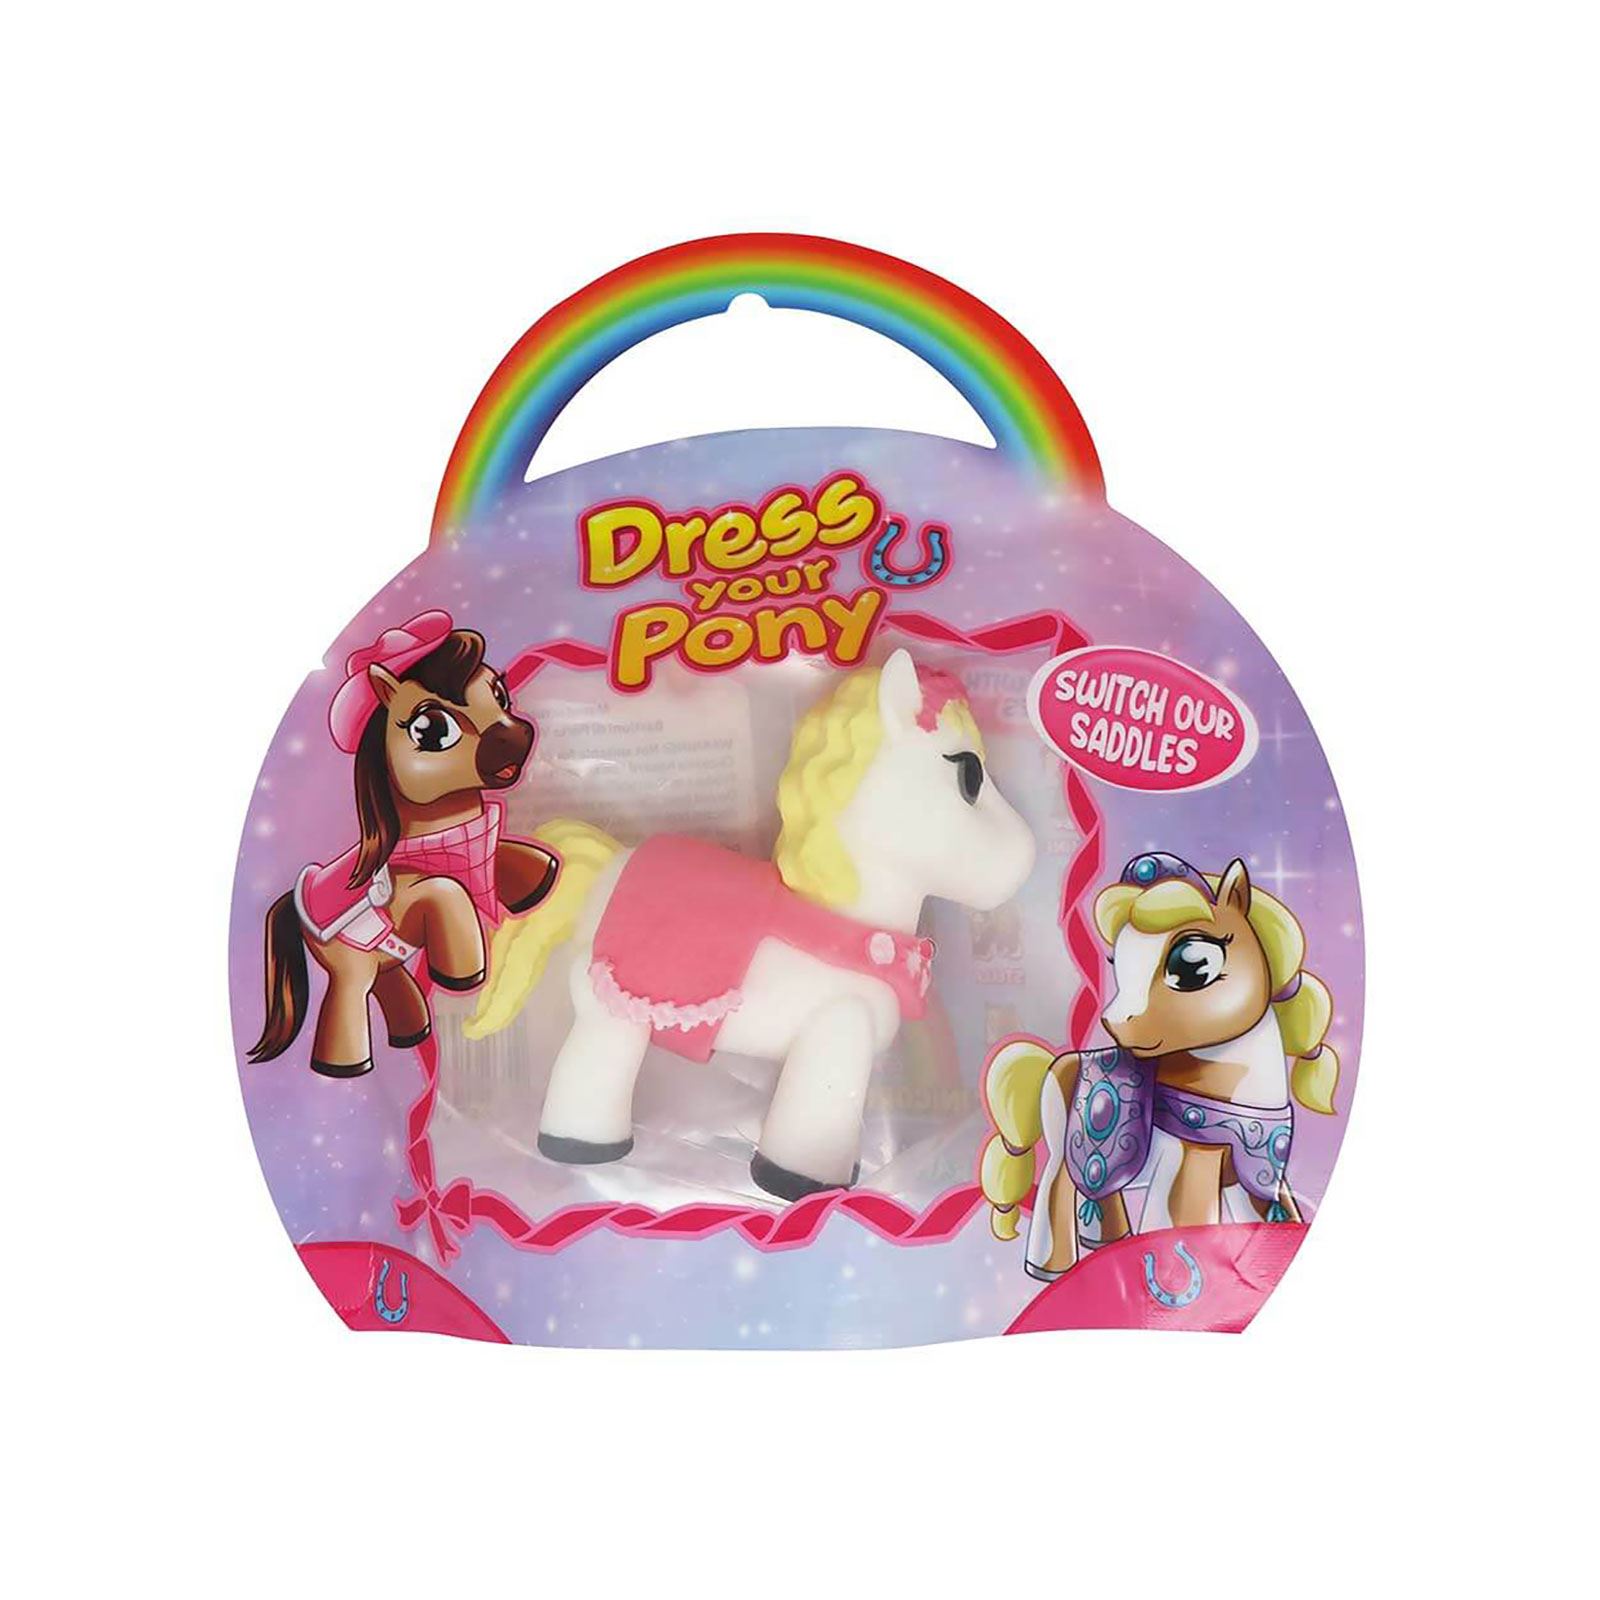 Sunman Oyuncak Diramix Dress Your Pony Kostümlü Figürler - Dreamy Sarı